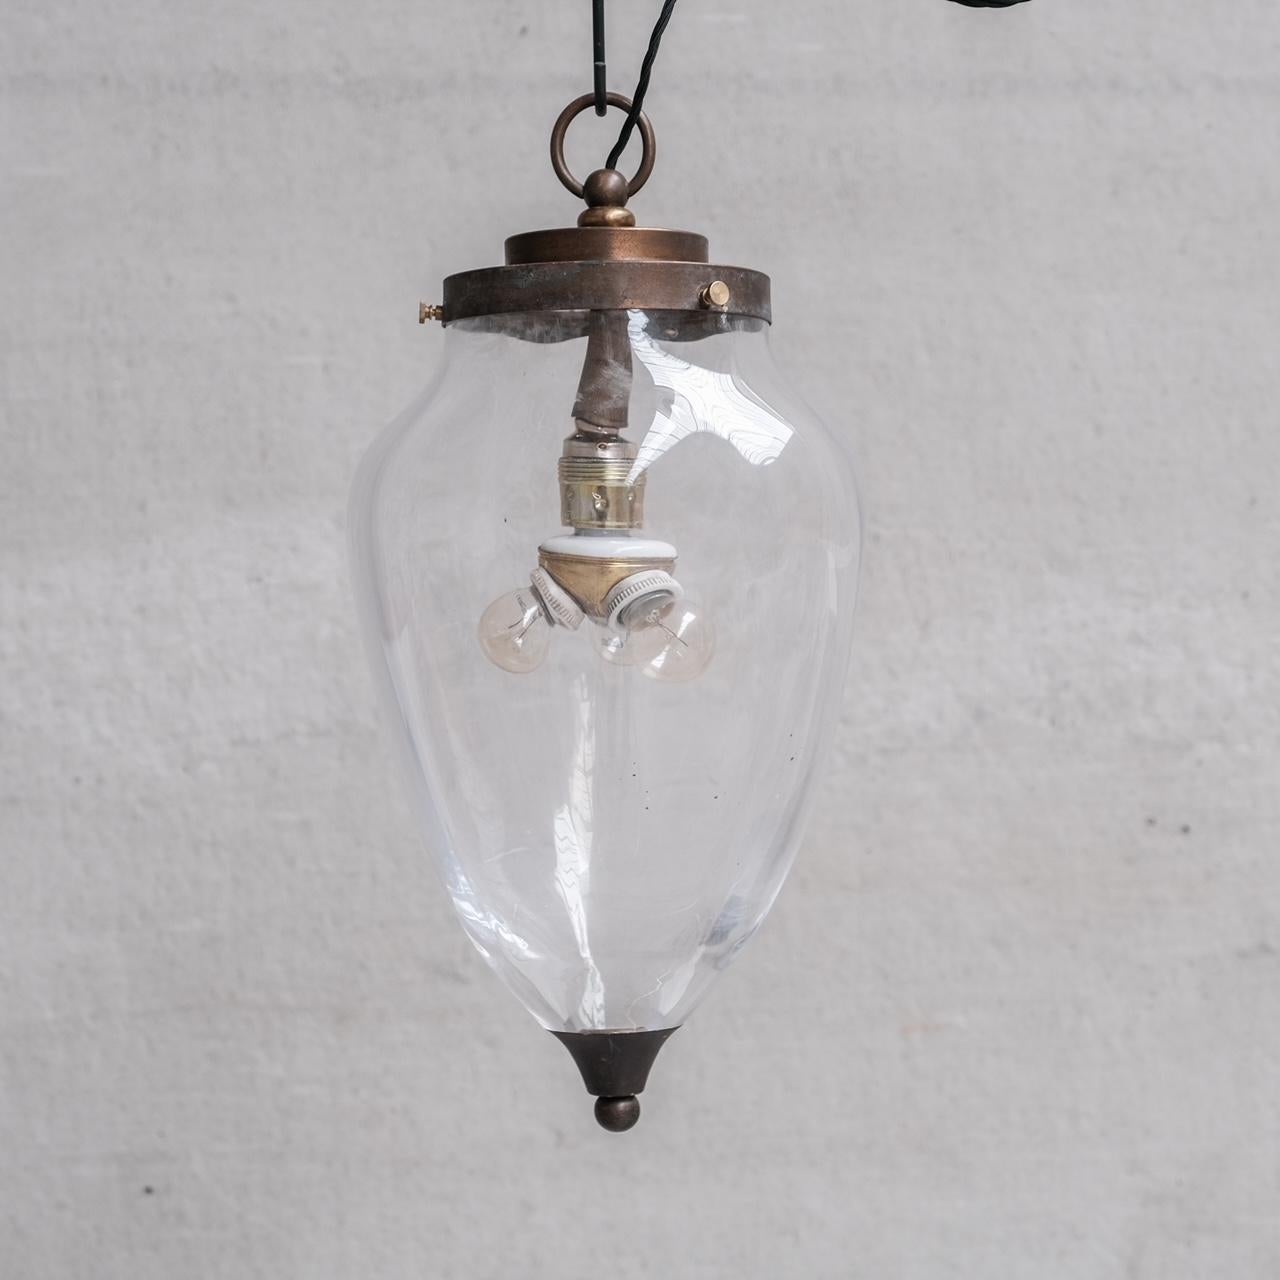 Une grande lampe suspendue en verre clair et en laiton. 

Hollande, c1950s. 

Verre épais, galerie en laiton à gradins, à patine naturelle. 

Ajout d'une option de prolongation de l'ampoule d'époque pour en faire une lampe à trois ampoules.